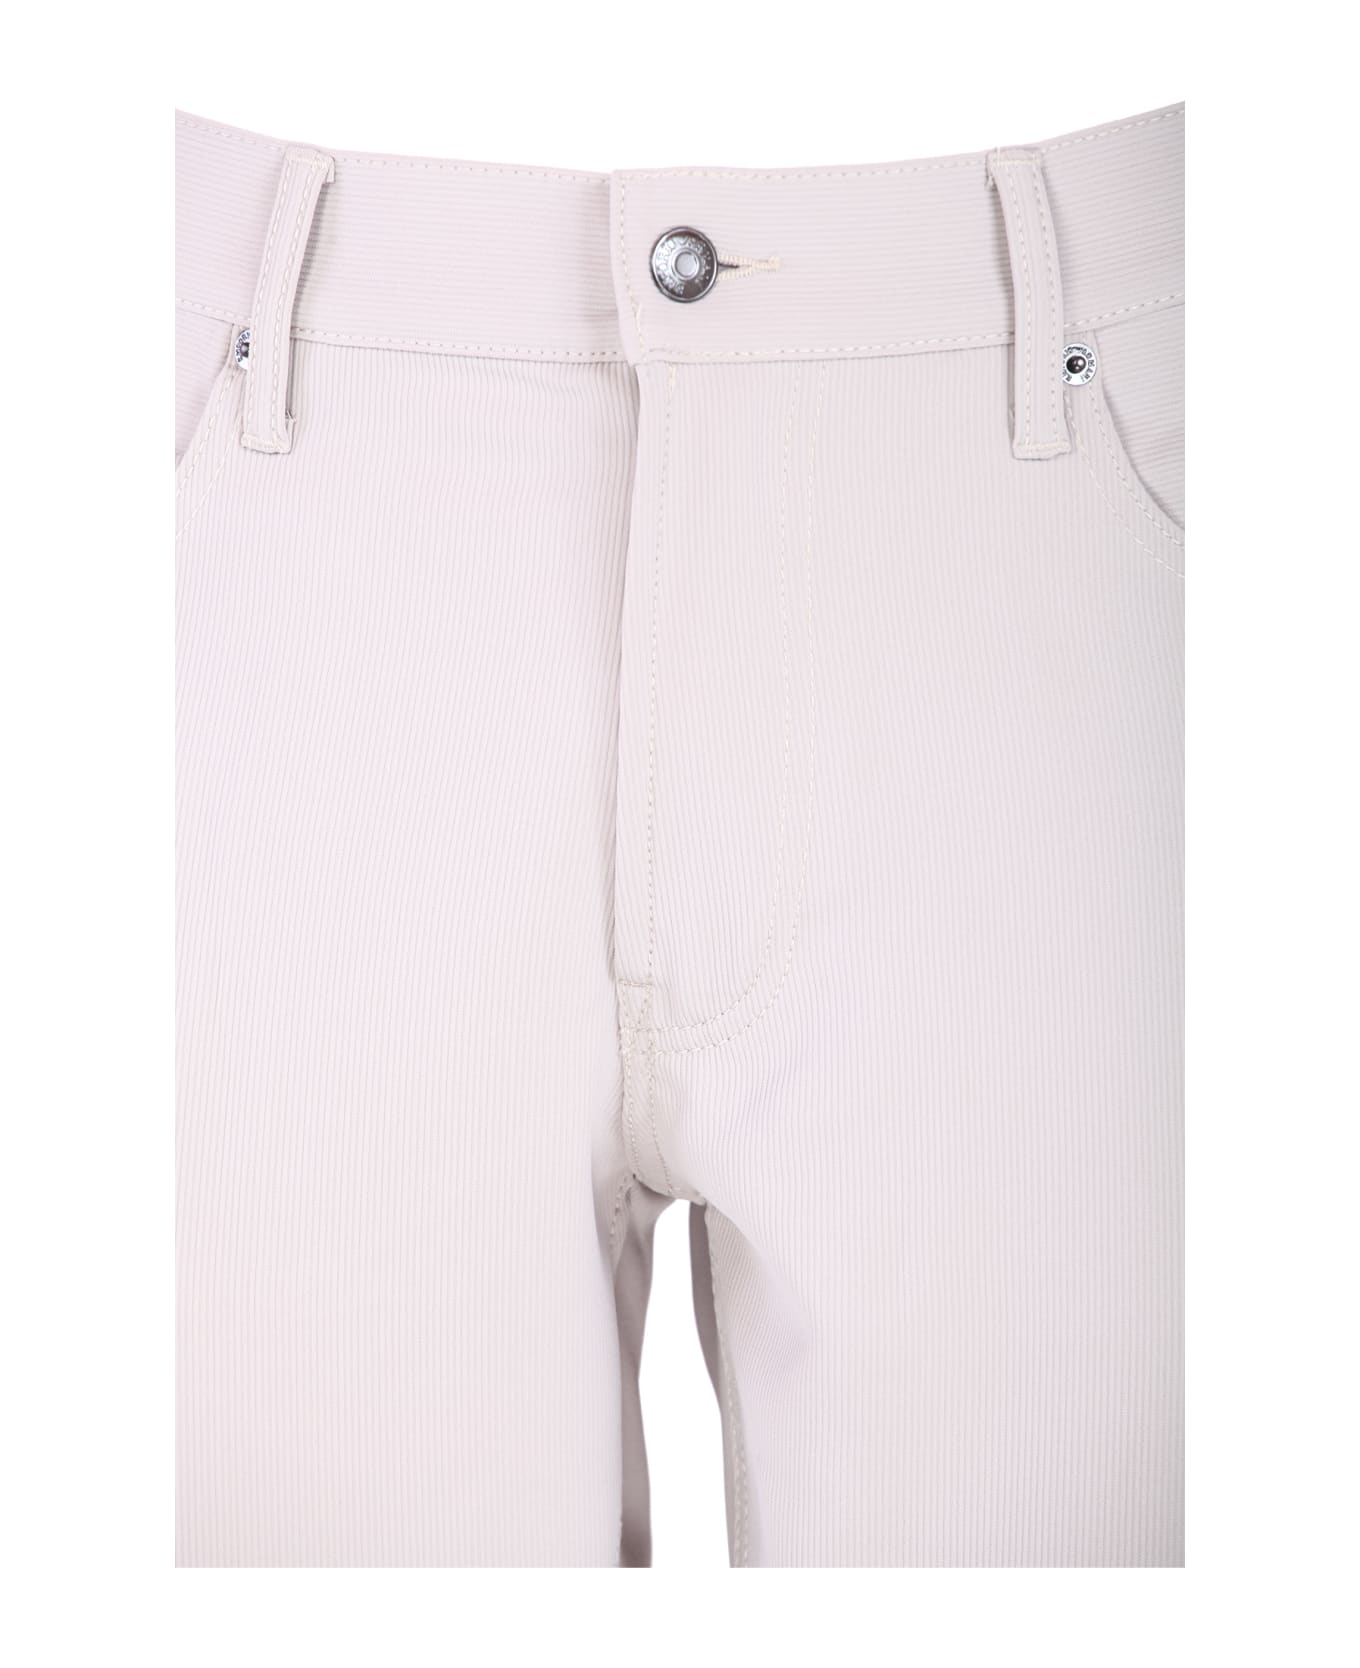 Emporio Armani Trousers Cream